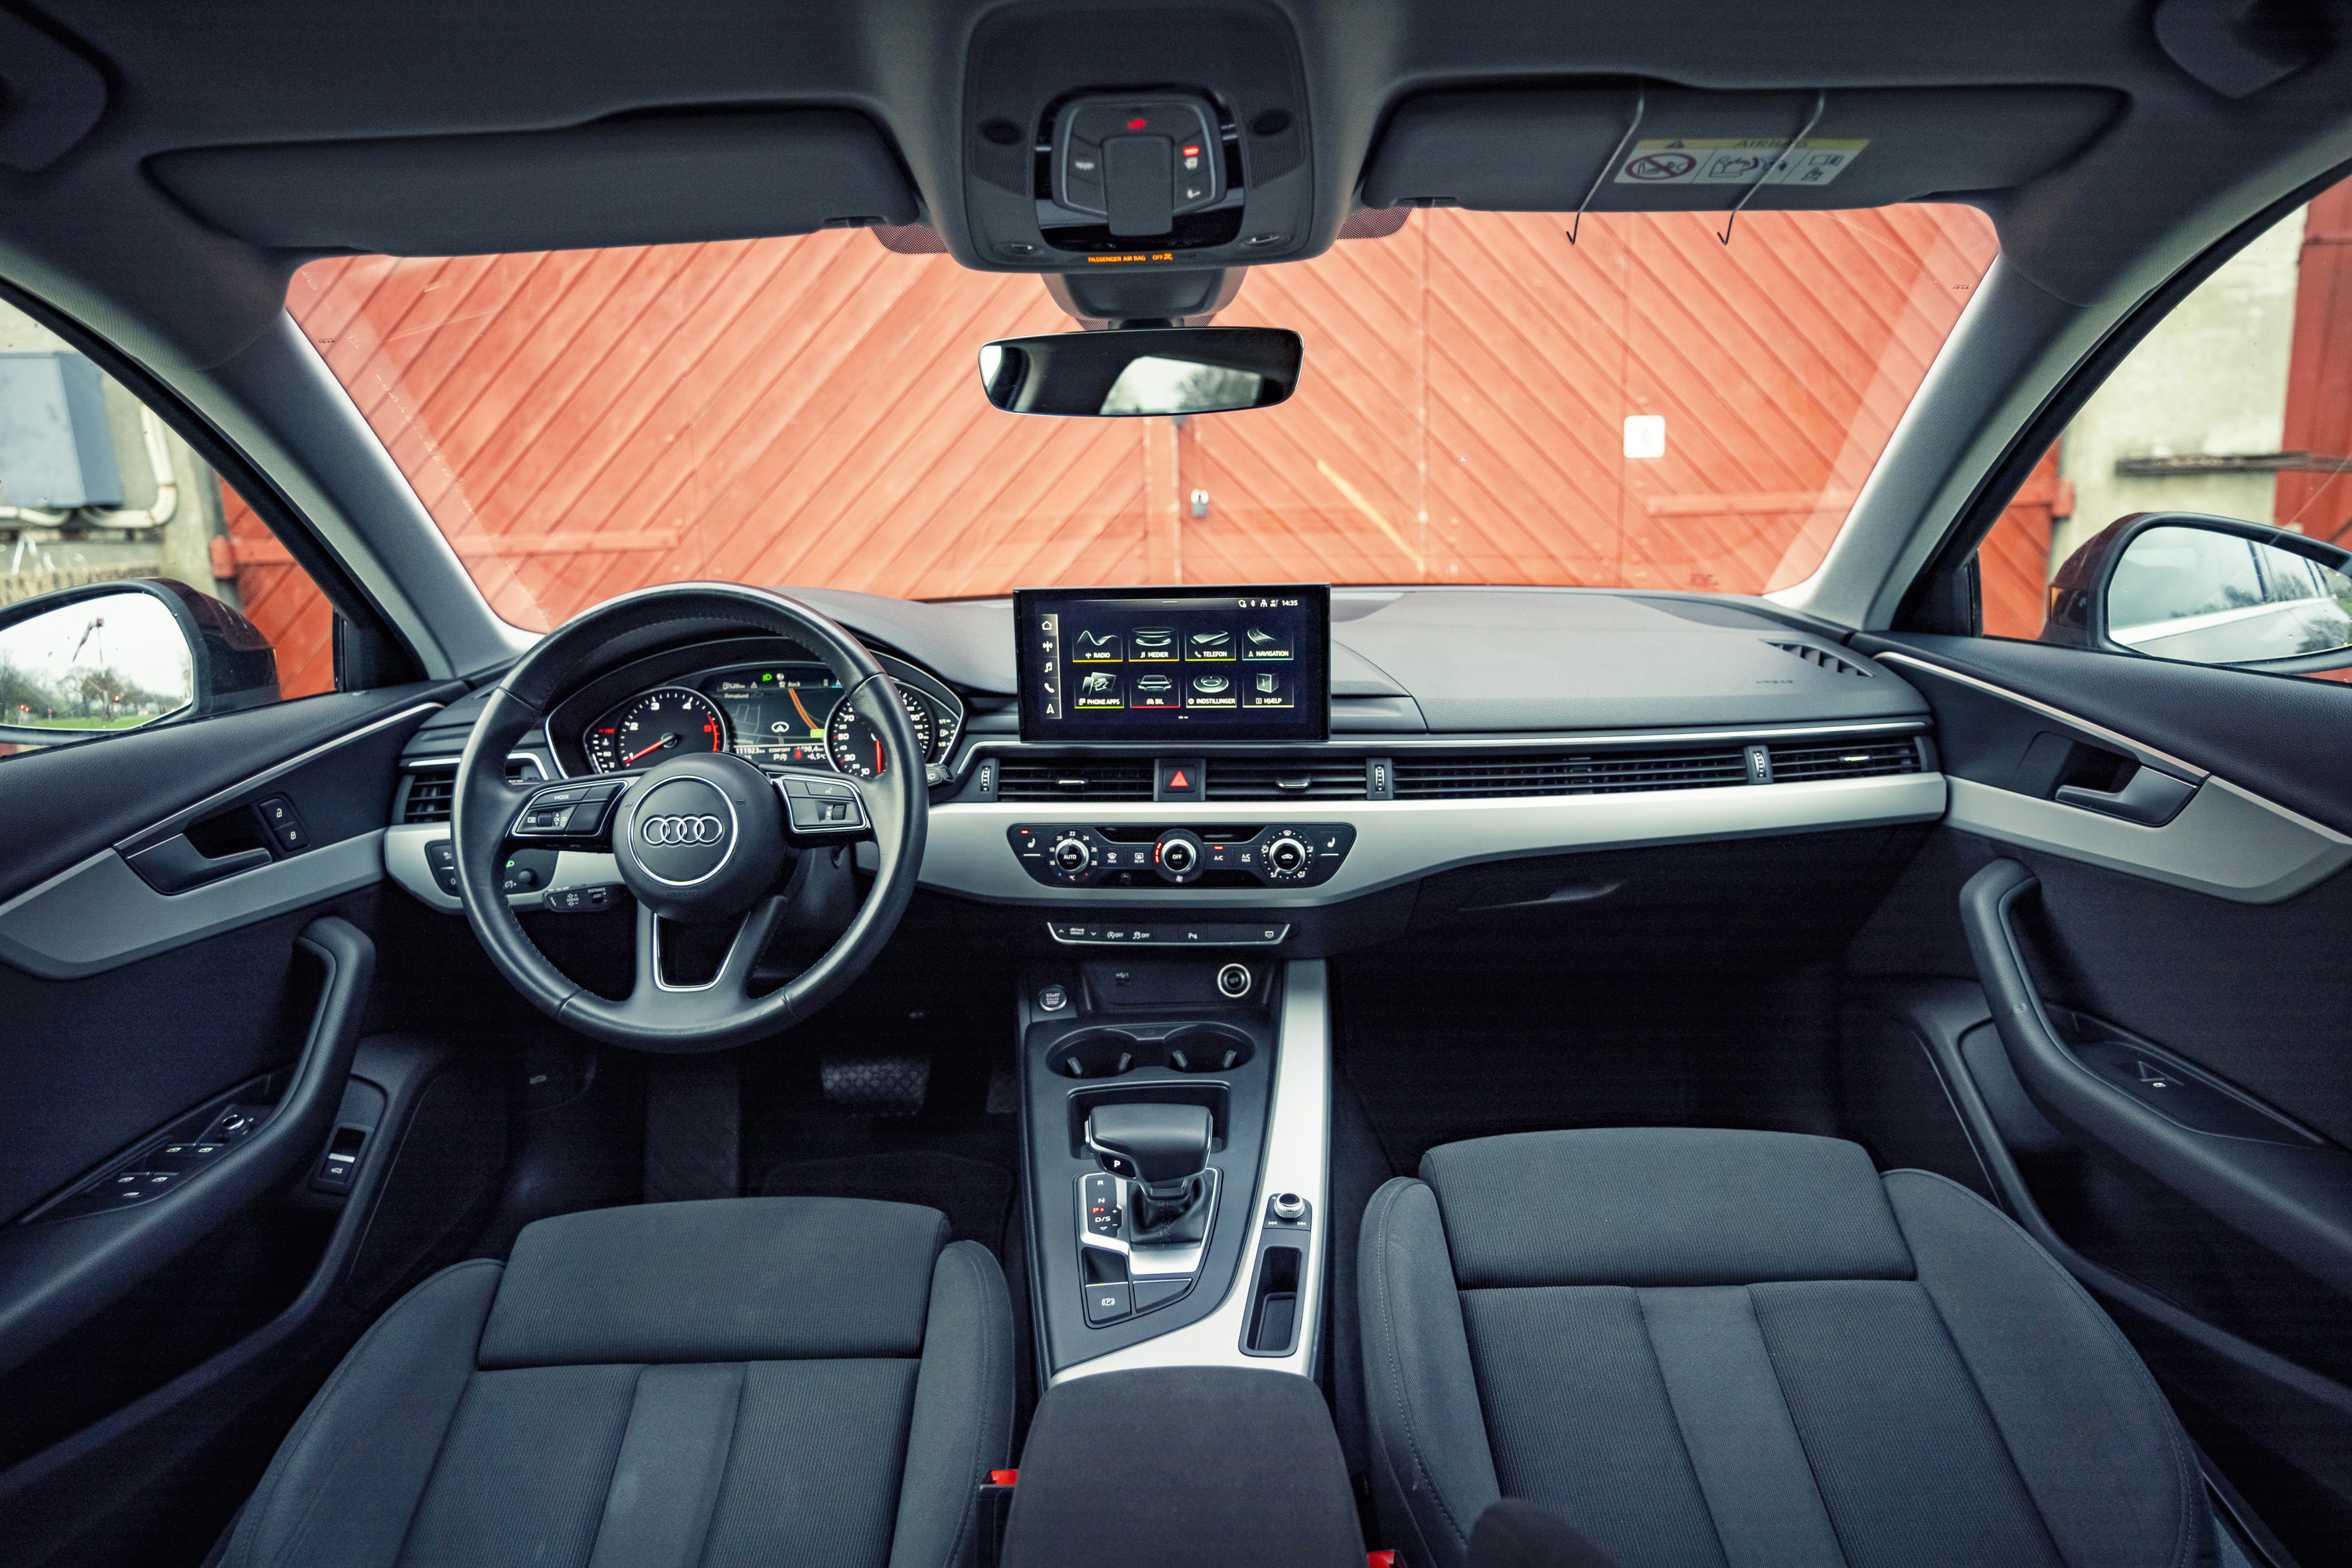 moral justering partikel Test: Hvad koster det at holde Audi A4 kørende? | Bilmagasinet.dk